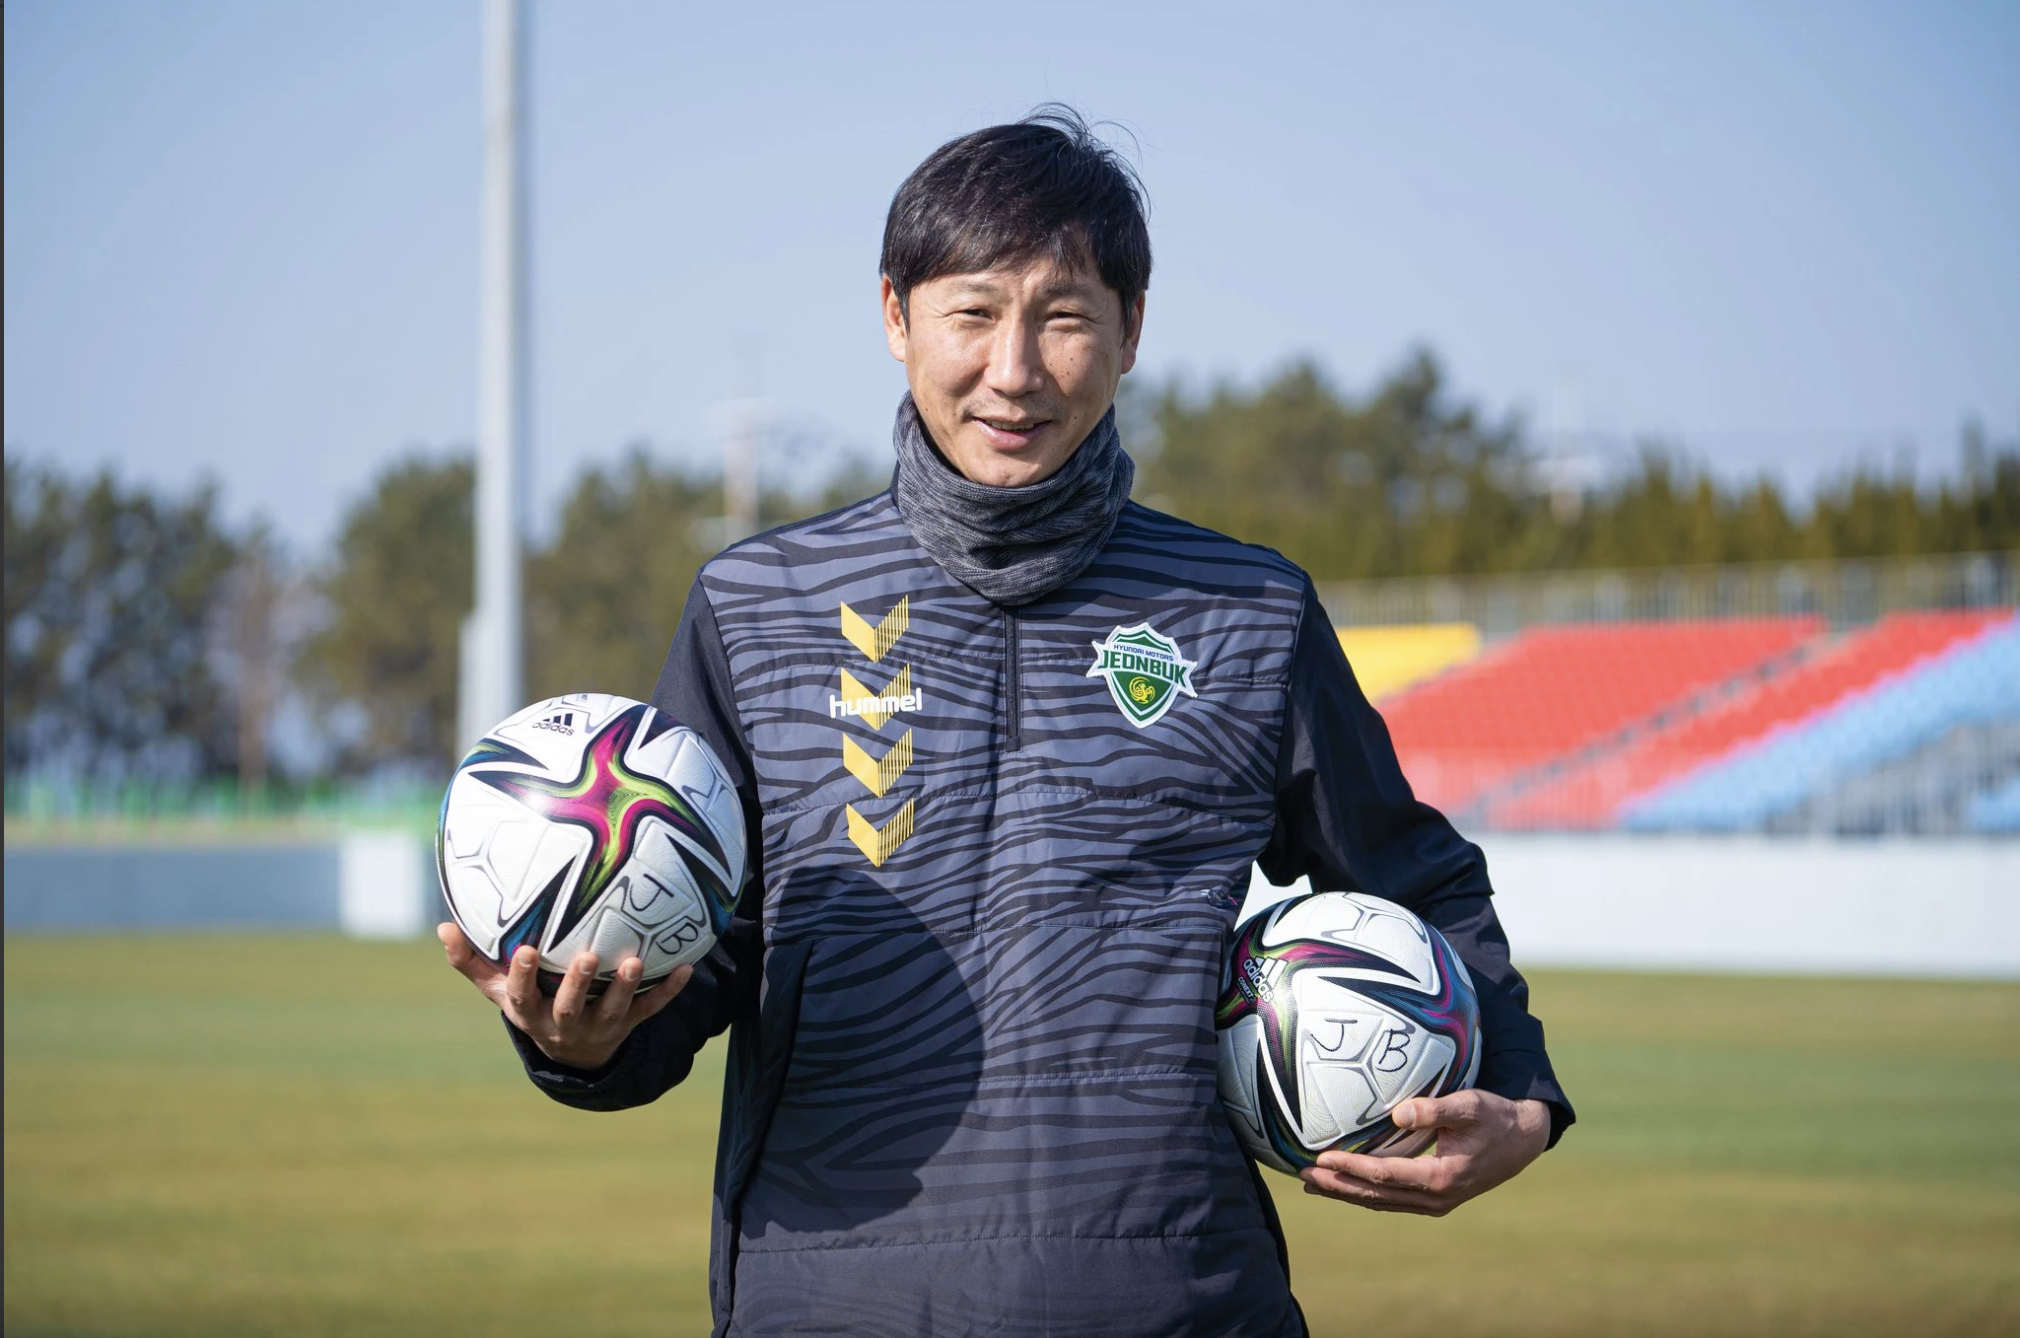 HLV Kim Sang-sik thuộc lớp nhà cầm quân trẻ hiện đại của bóng đá Hàn Quốc